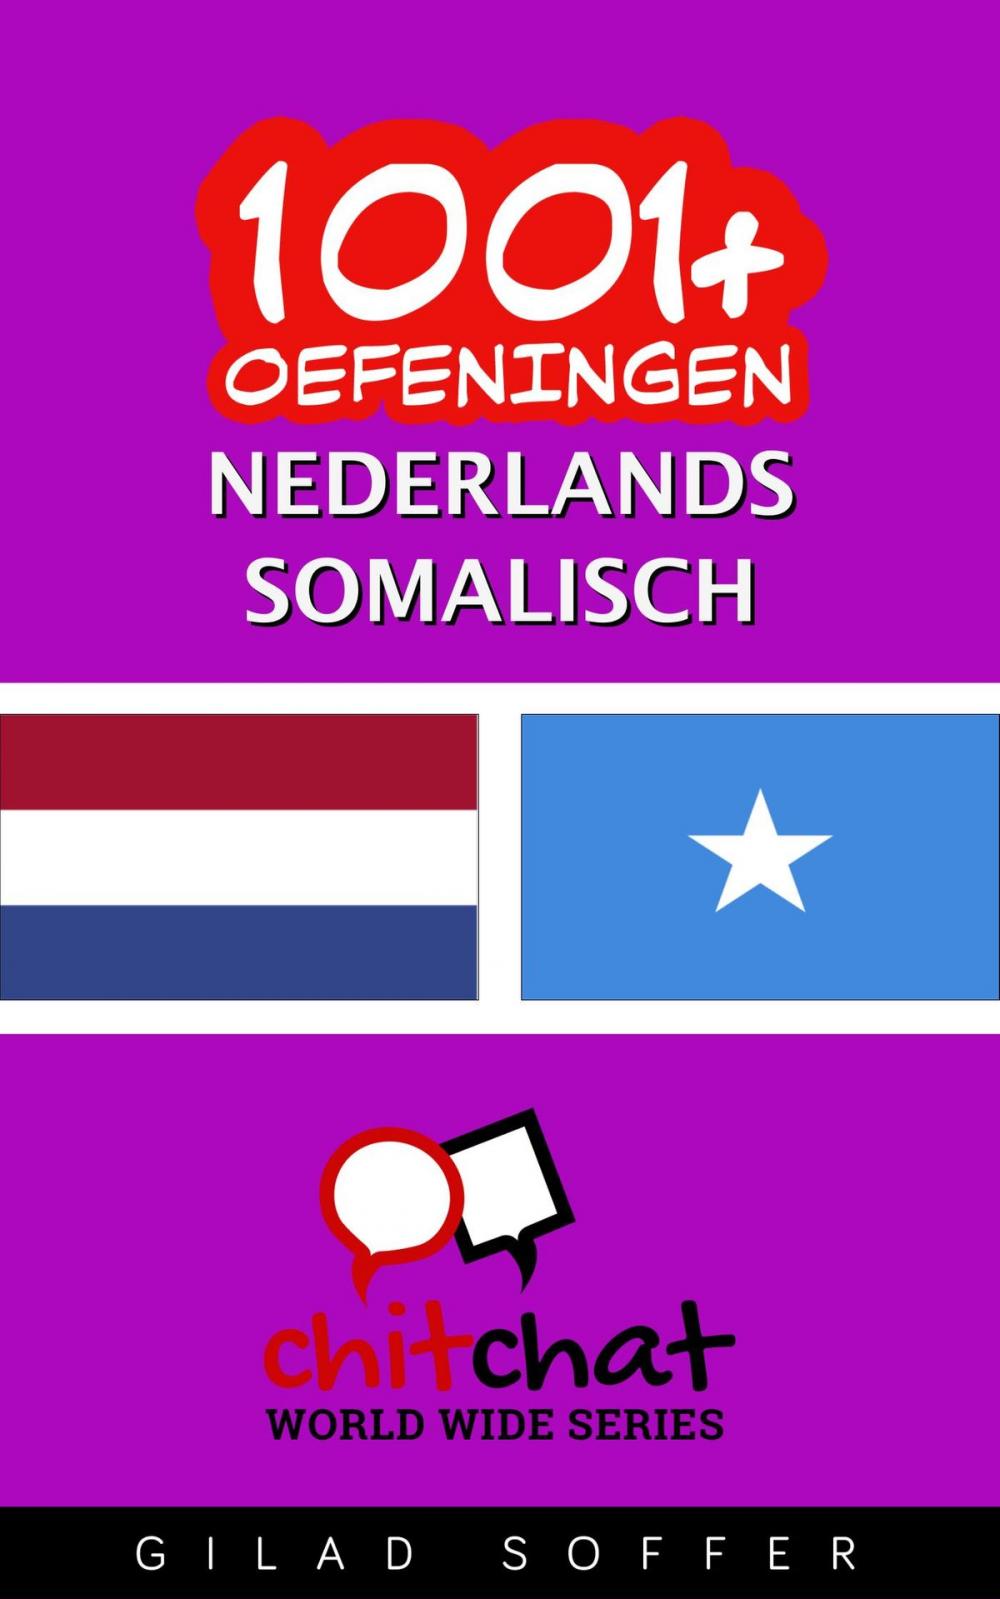 Big bigCover of 1001+ oefeningen nederlands - Somalisch